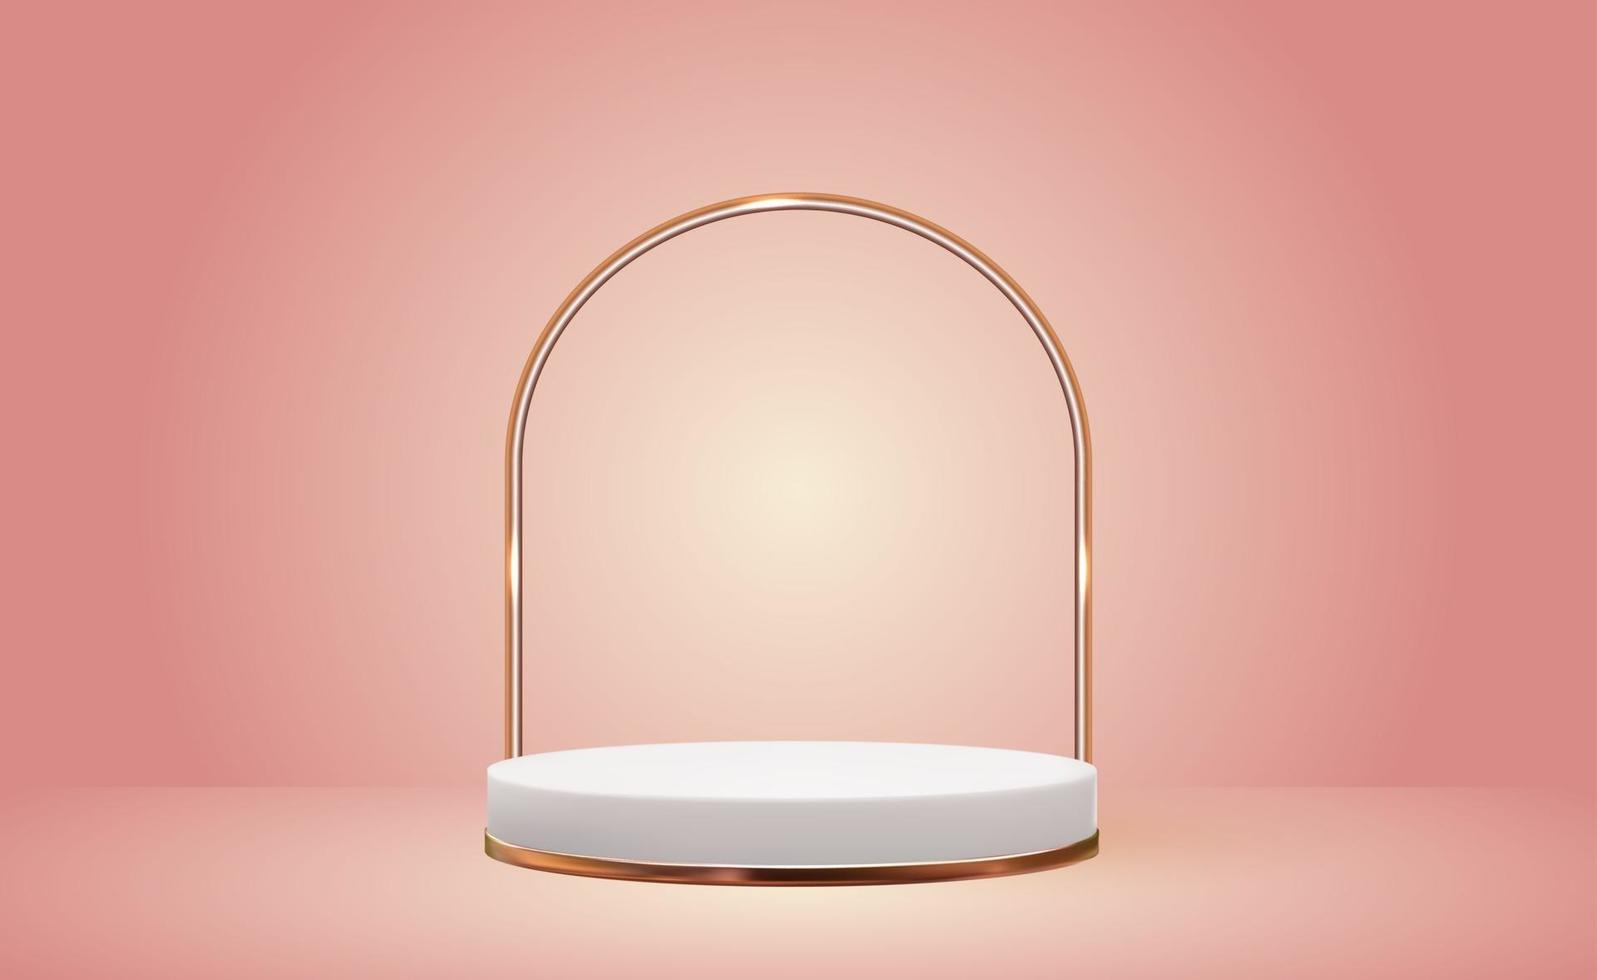 fundo de pedestal 3d branco com moldura de anel de vidro dourado rosa para revista de moda de apresentação de produtos cosméticos vetor